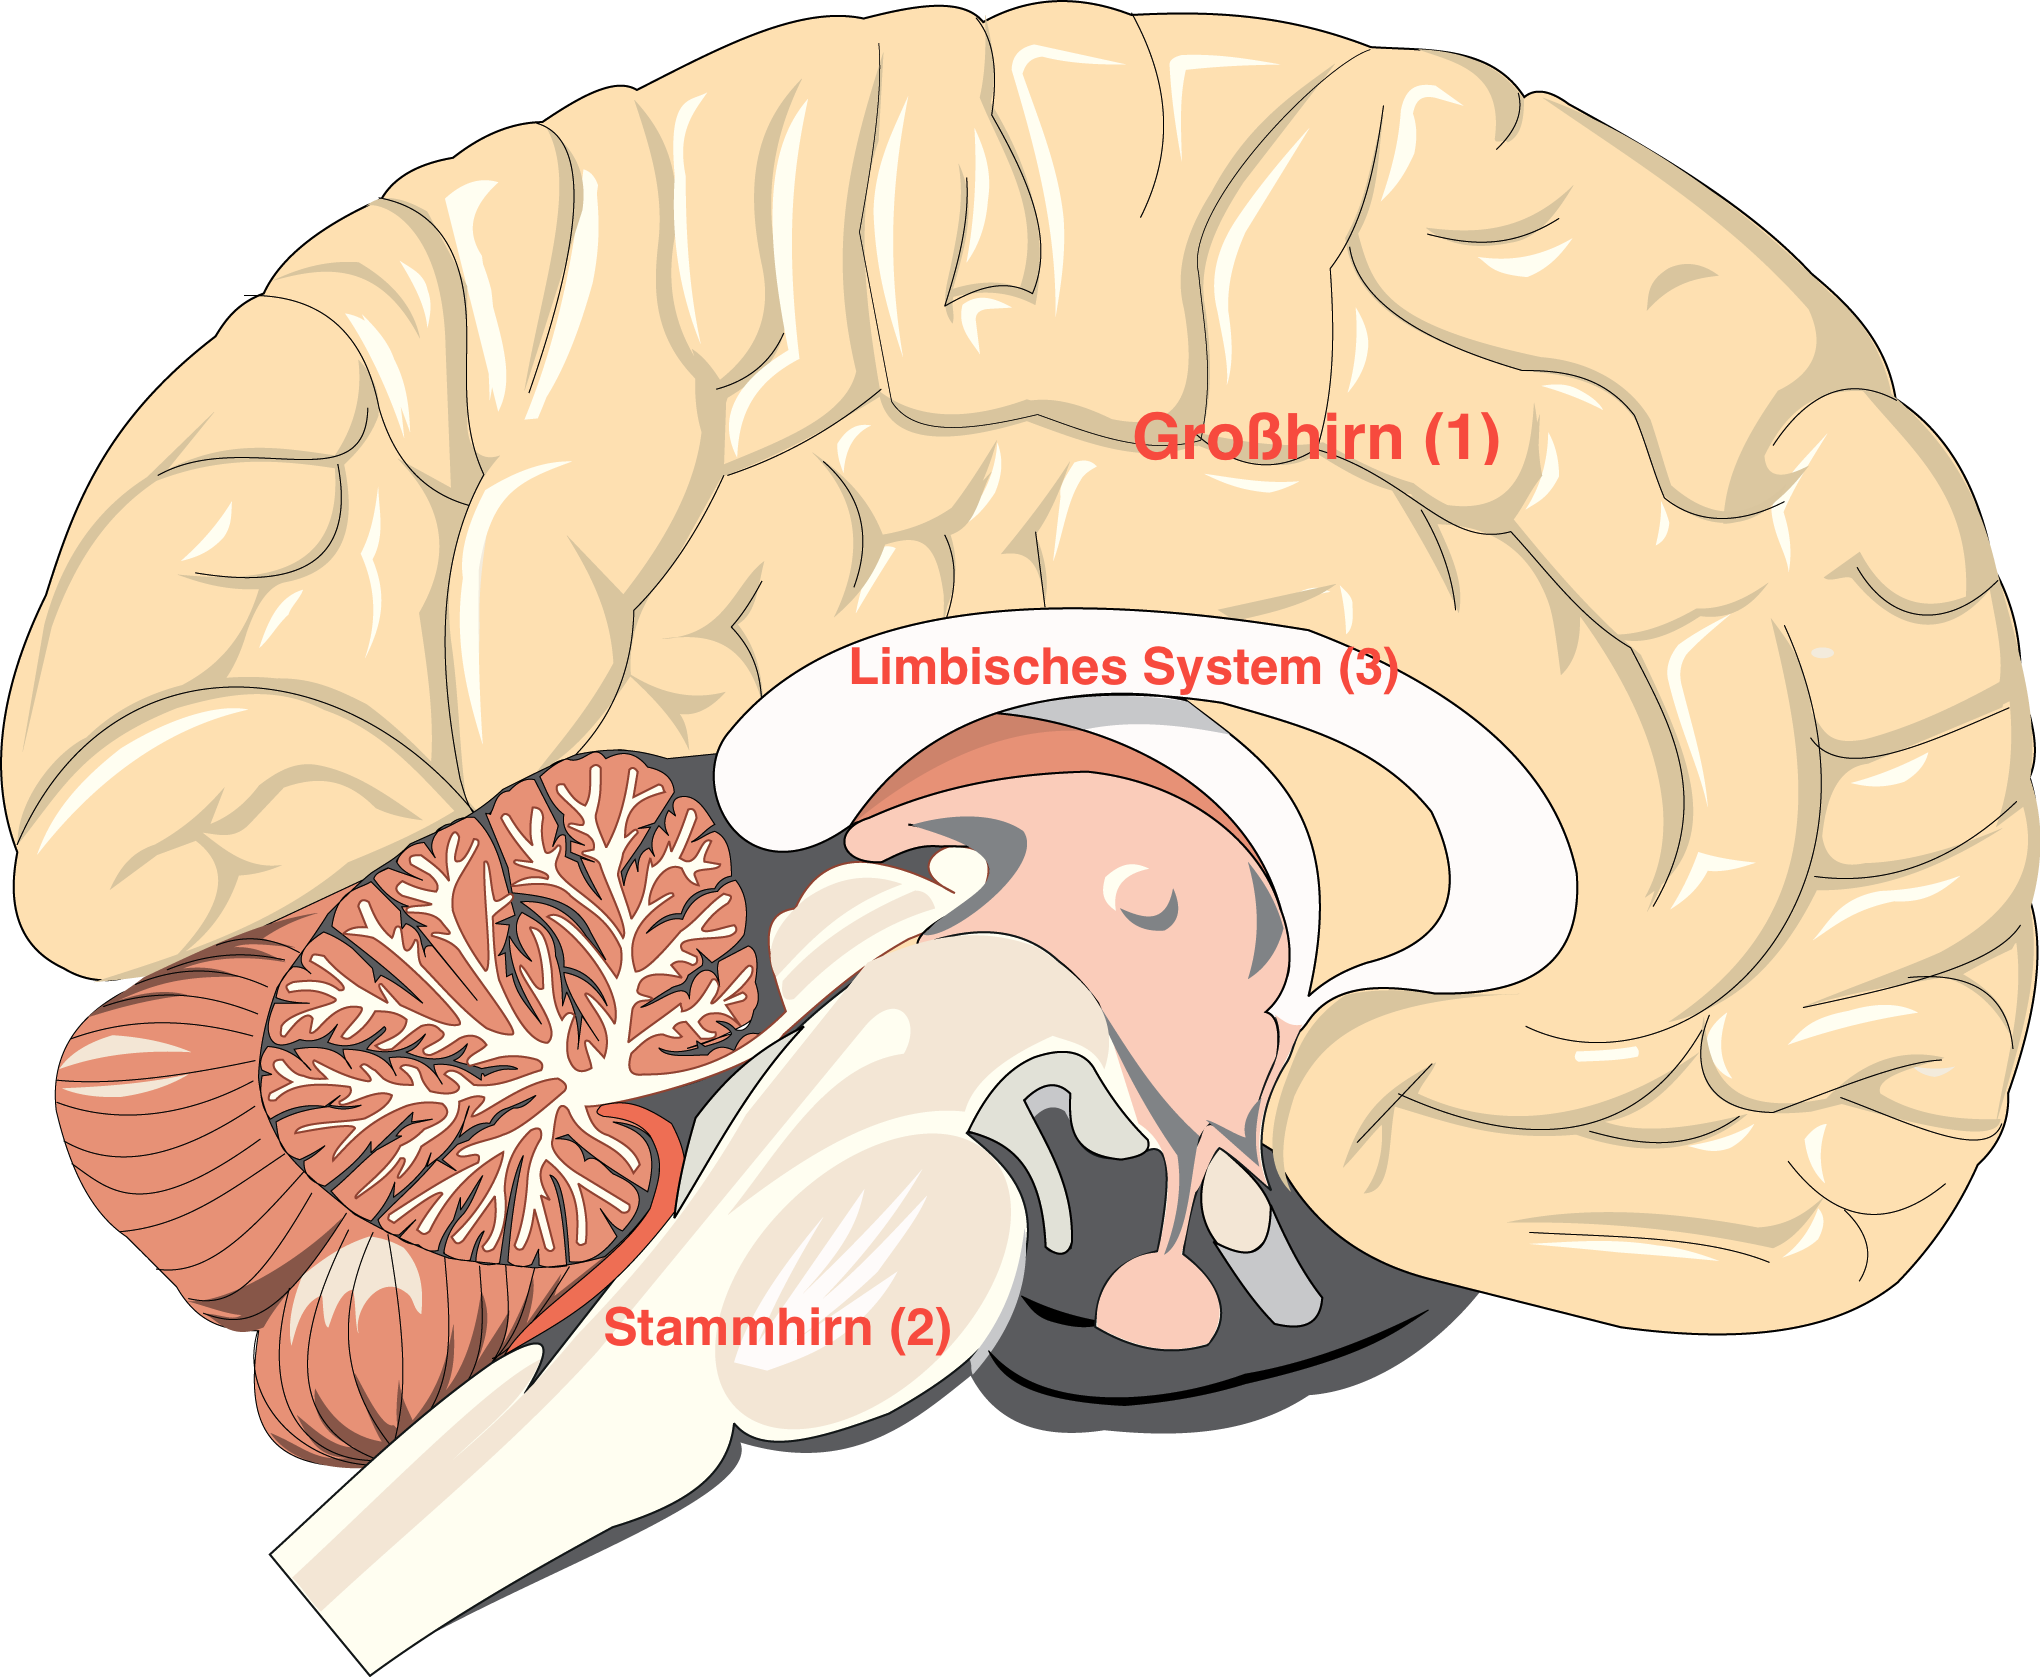 Grafik Menschliches Gehirn Mit Limbisches System Stammhirn Und Grosshirn Allerbestes Leben